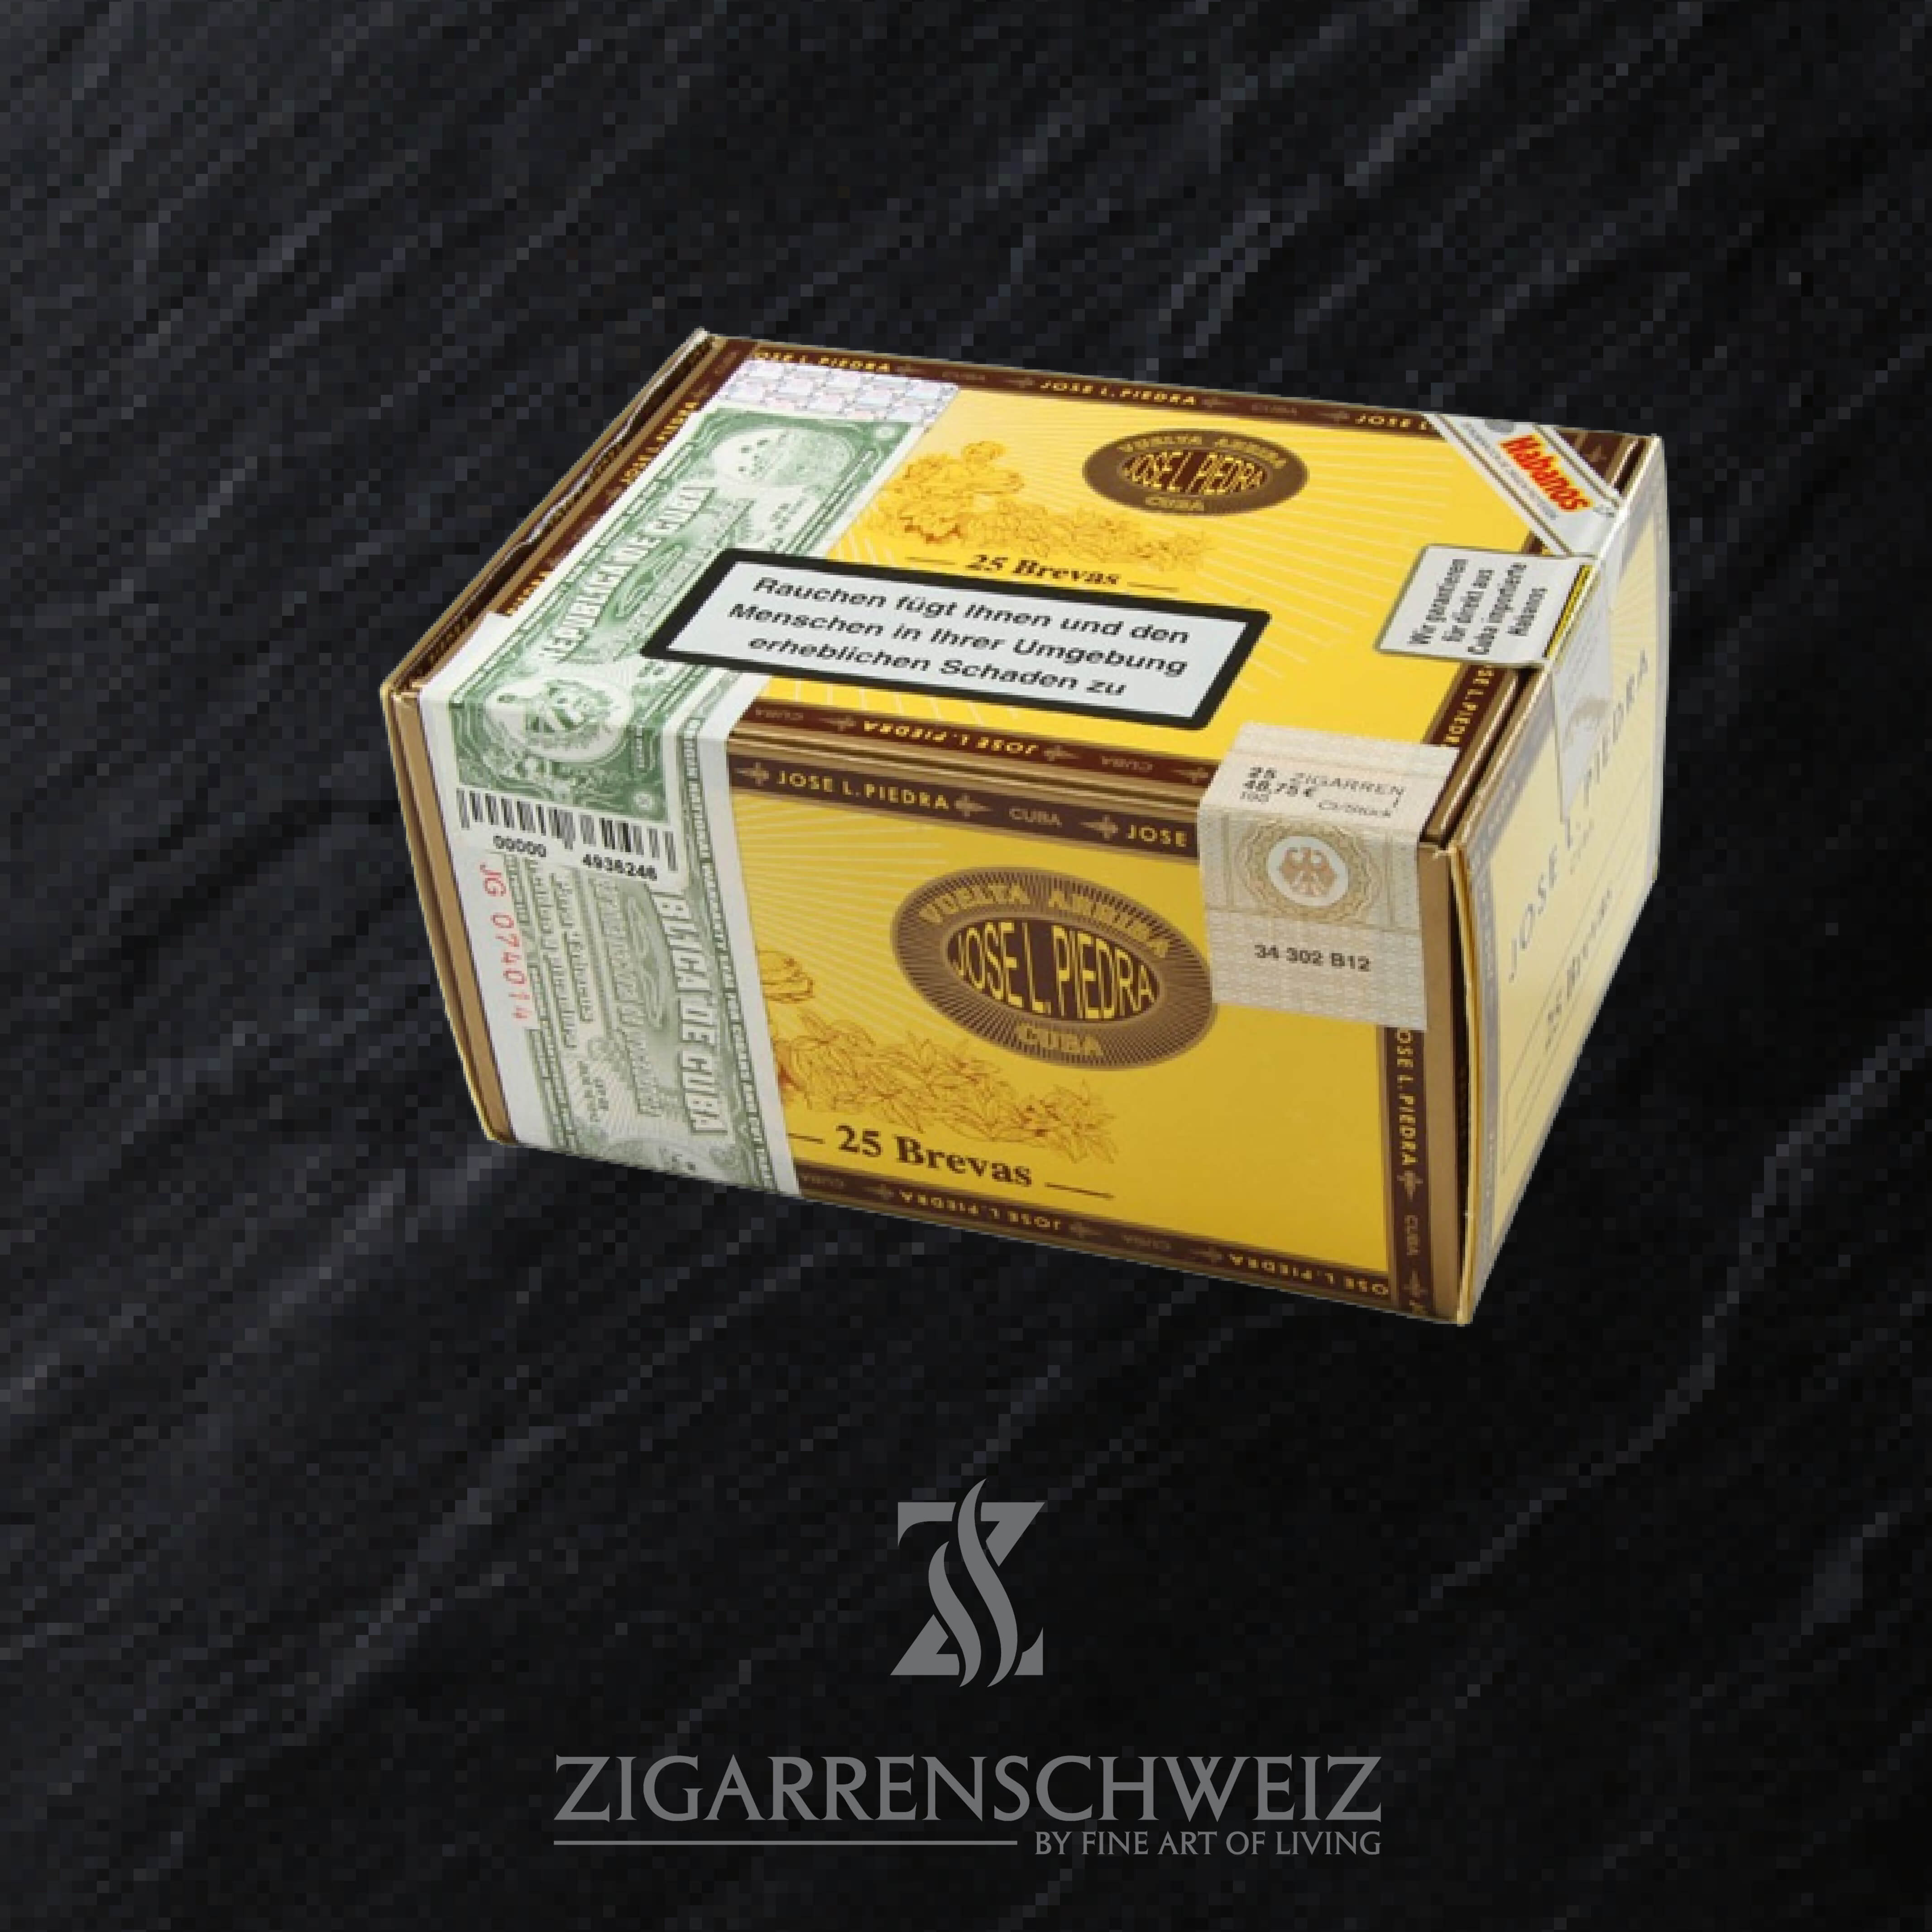 25er Schachtel Jose L. Piedra Brevas Zigarren aus Kuba